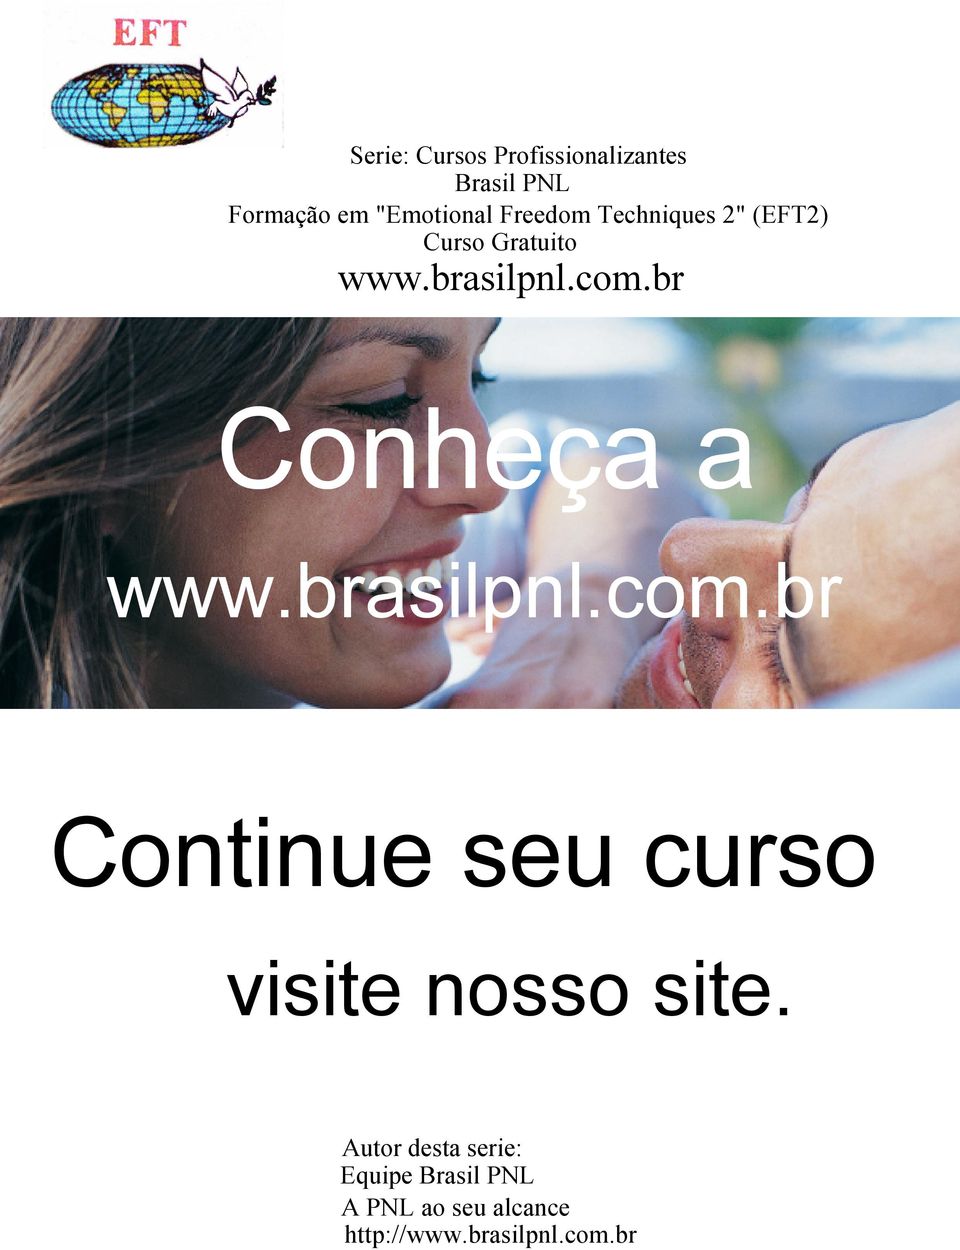 br Conheça a www.brasilpnl.com.br Continue seu curso visite nosso site.